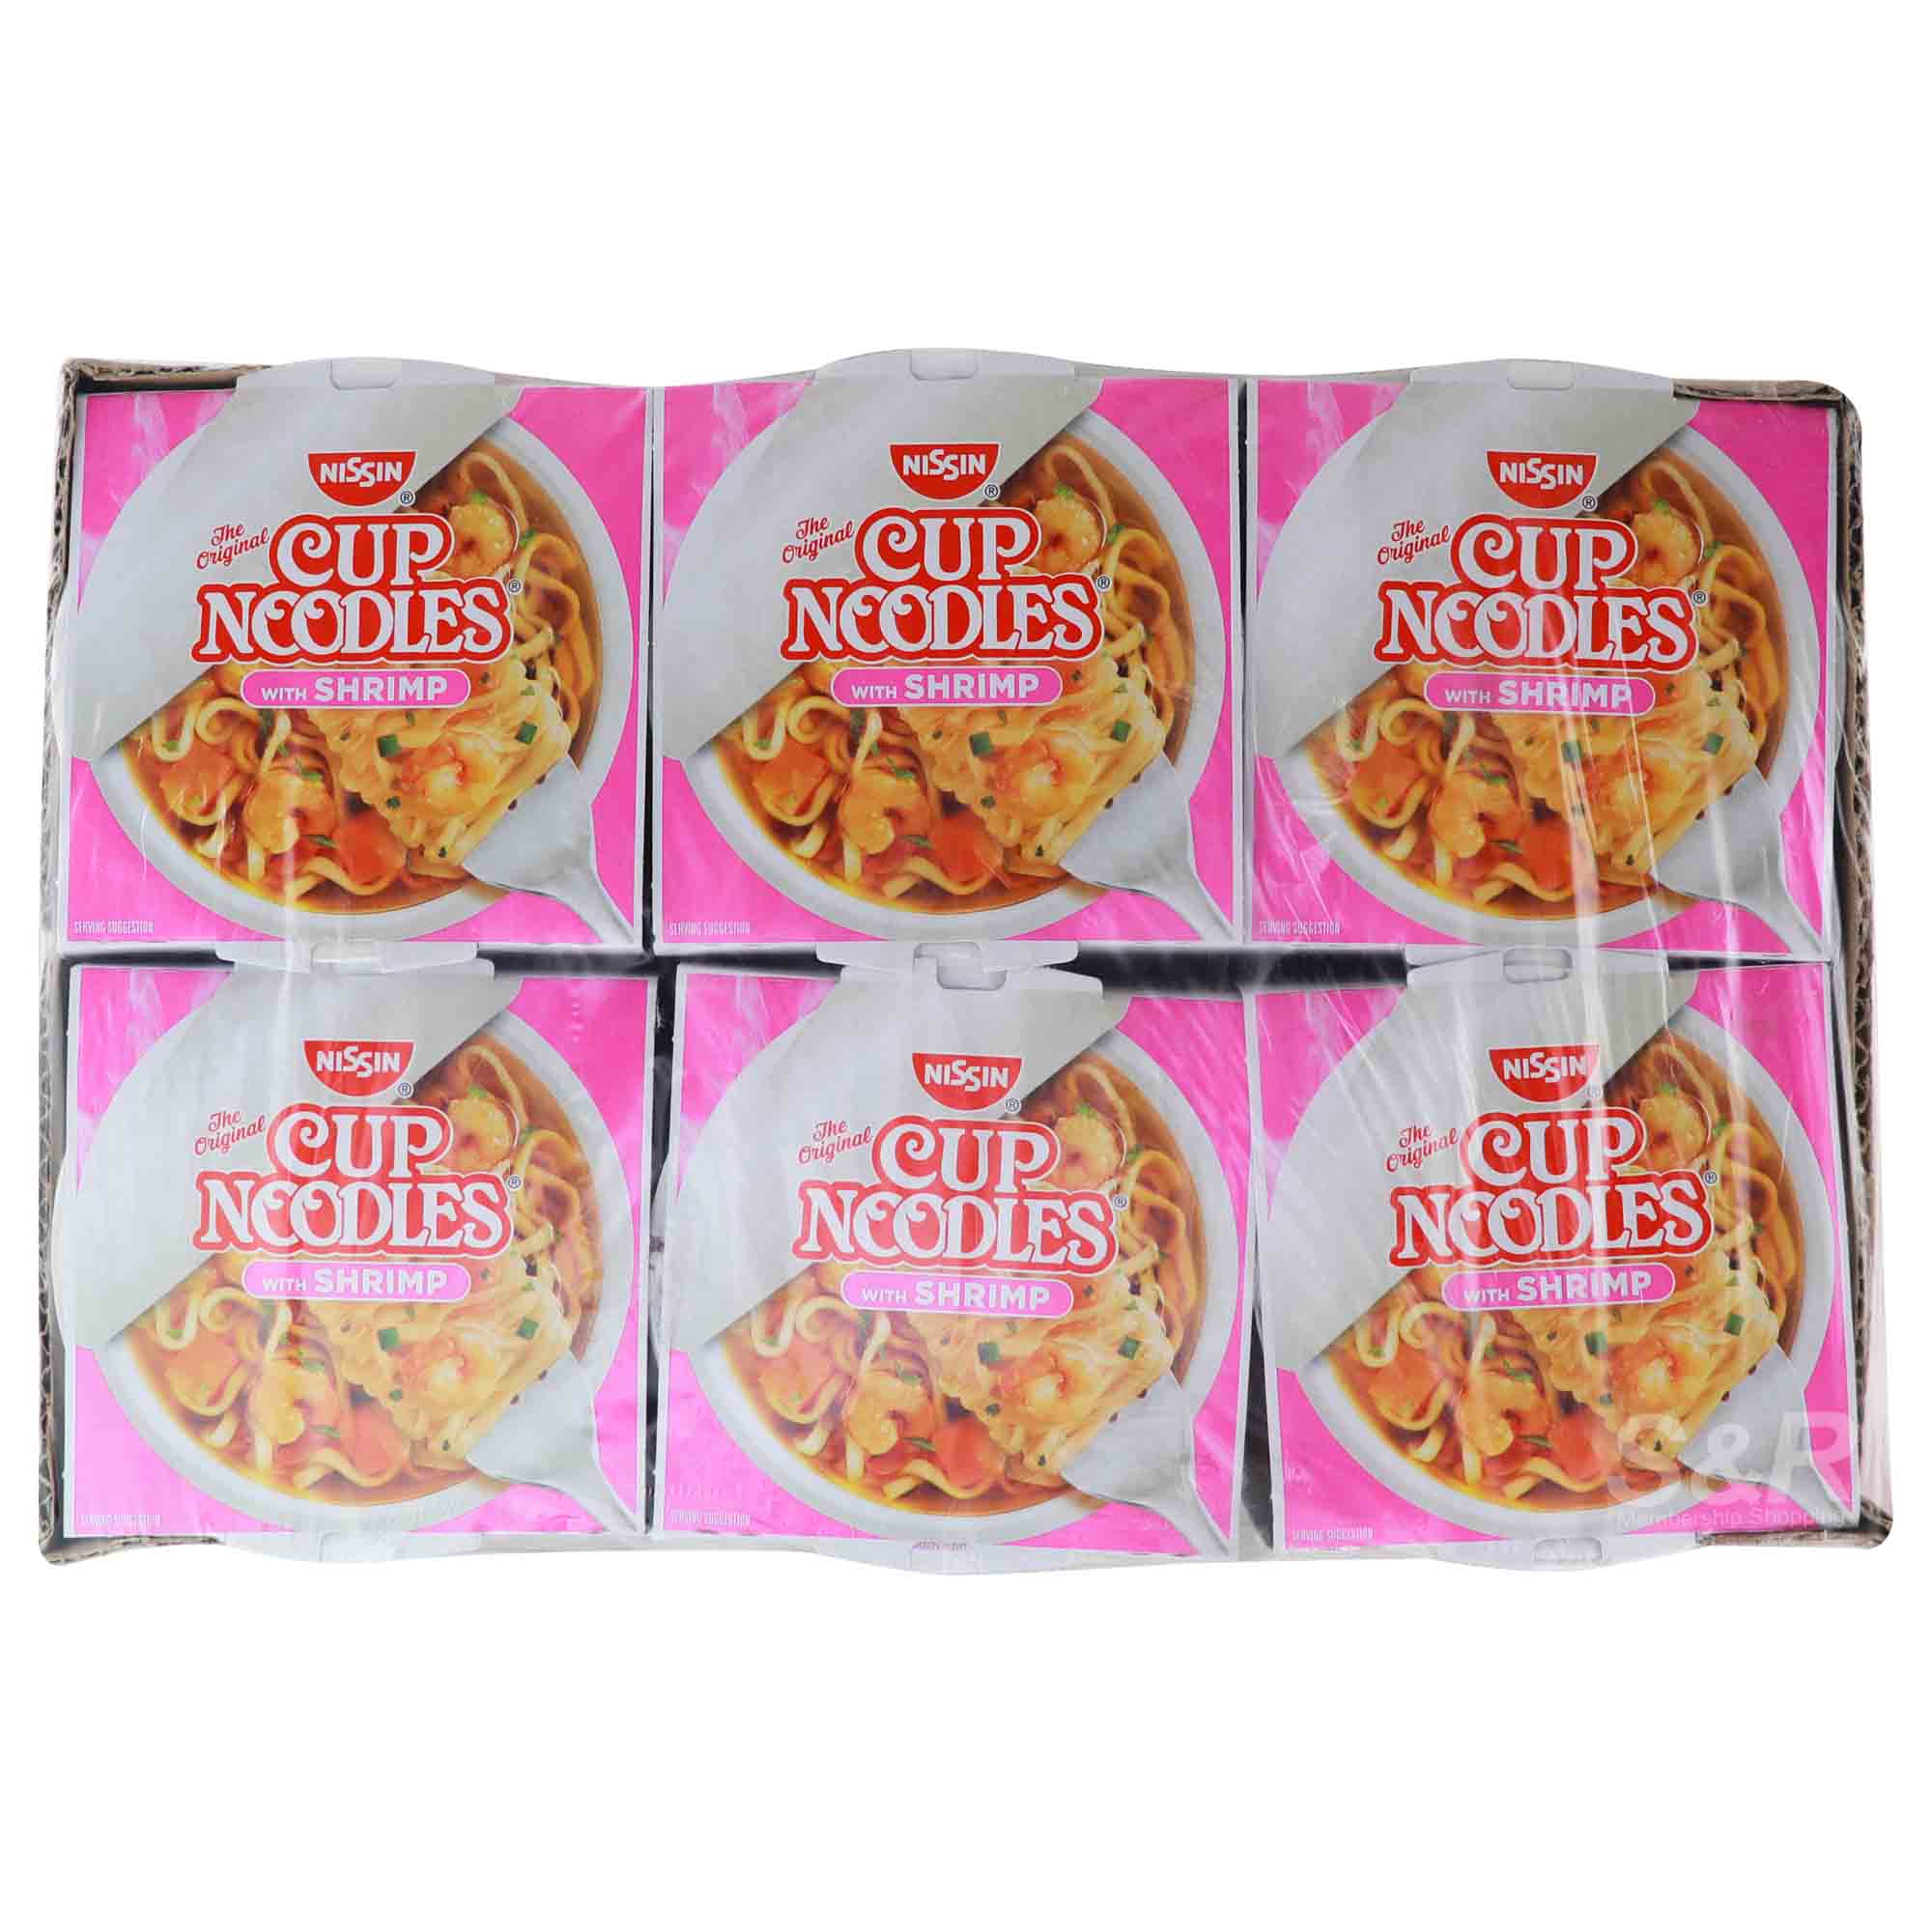 Nissin Cup Noodles with Shrimp 6pcs